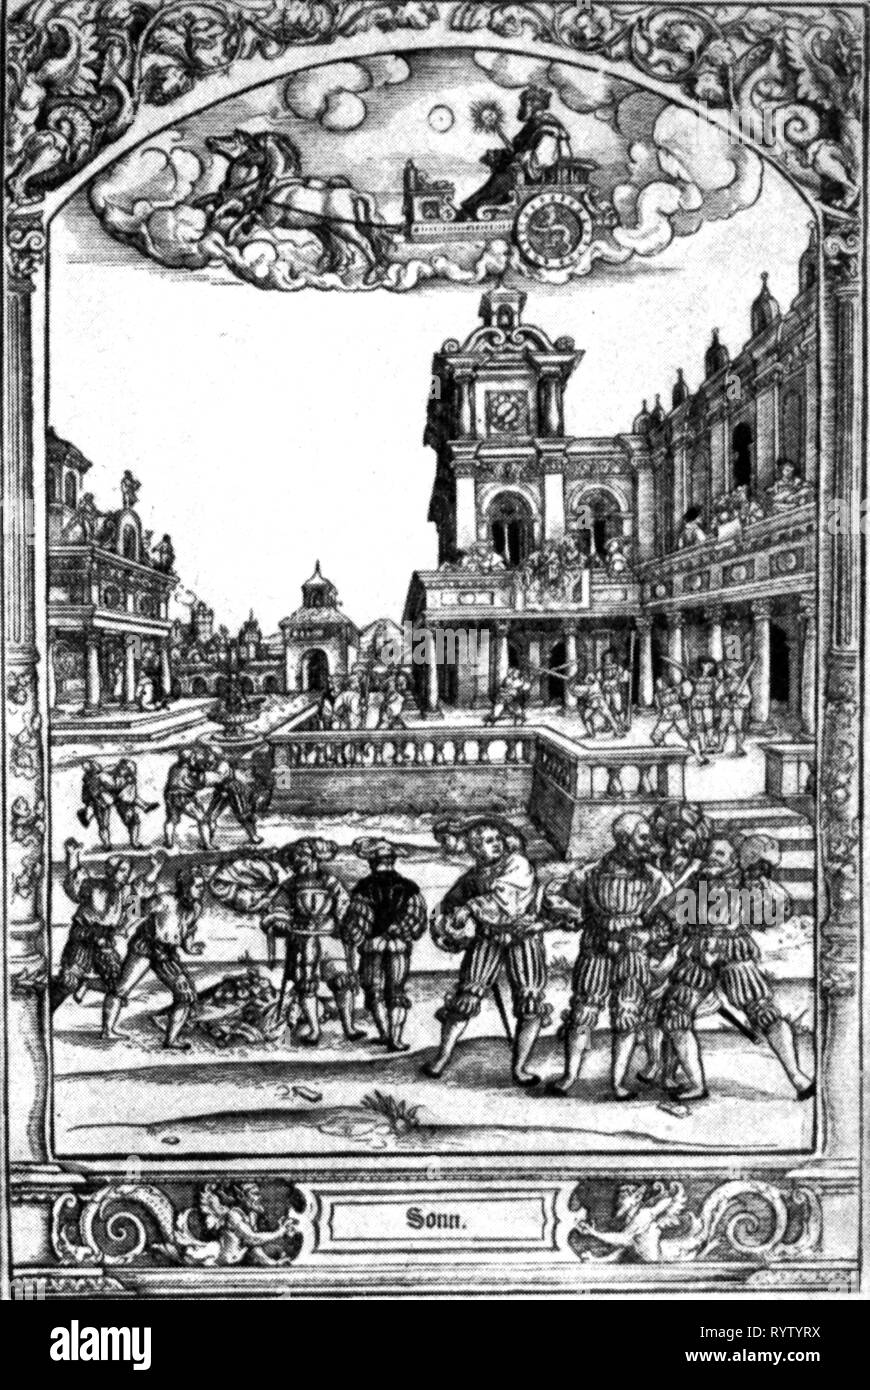 Astronomia, allegorie, sun, sun dio nel carro sopra il cortile con guerriero nel corso di addestramento alle armi, incisione su rame, da Hans Sebald Beham (1500 - 1550), 1530 - 1540, l'artista del diritto d'autore non deve essere cancellata Foto Stock